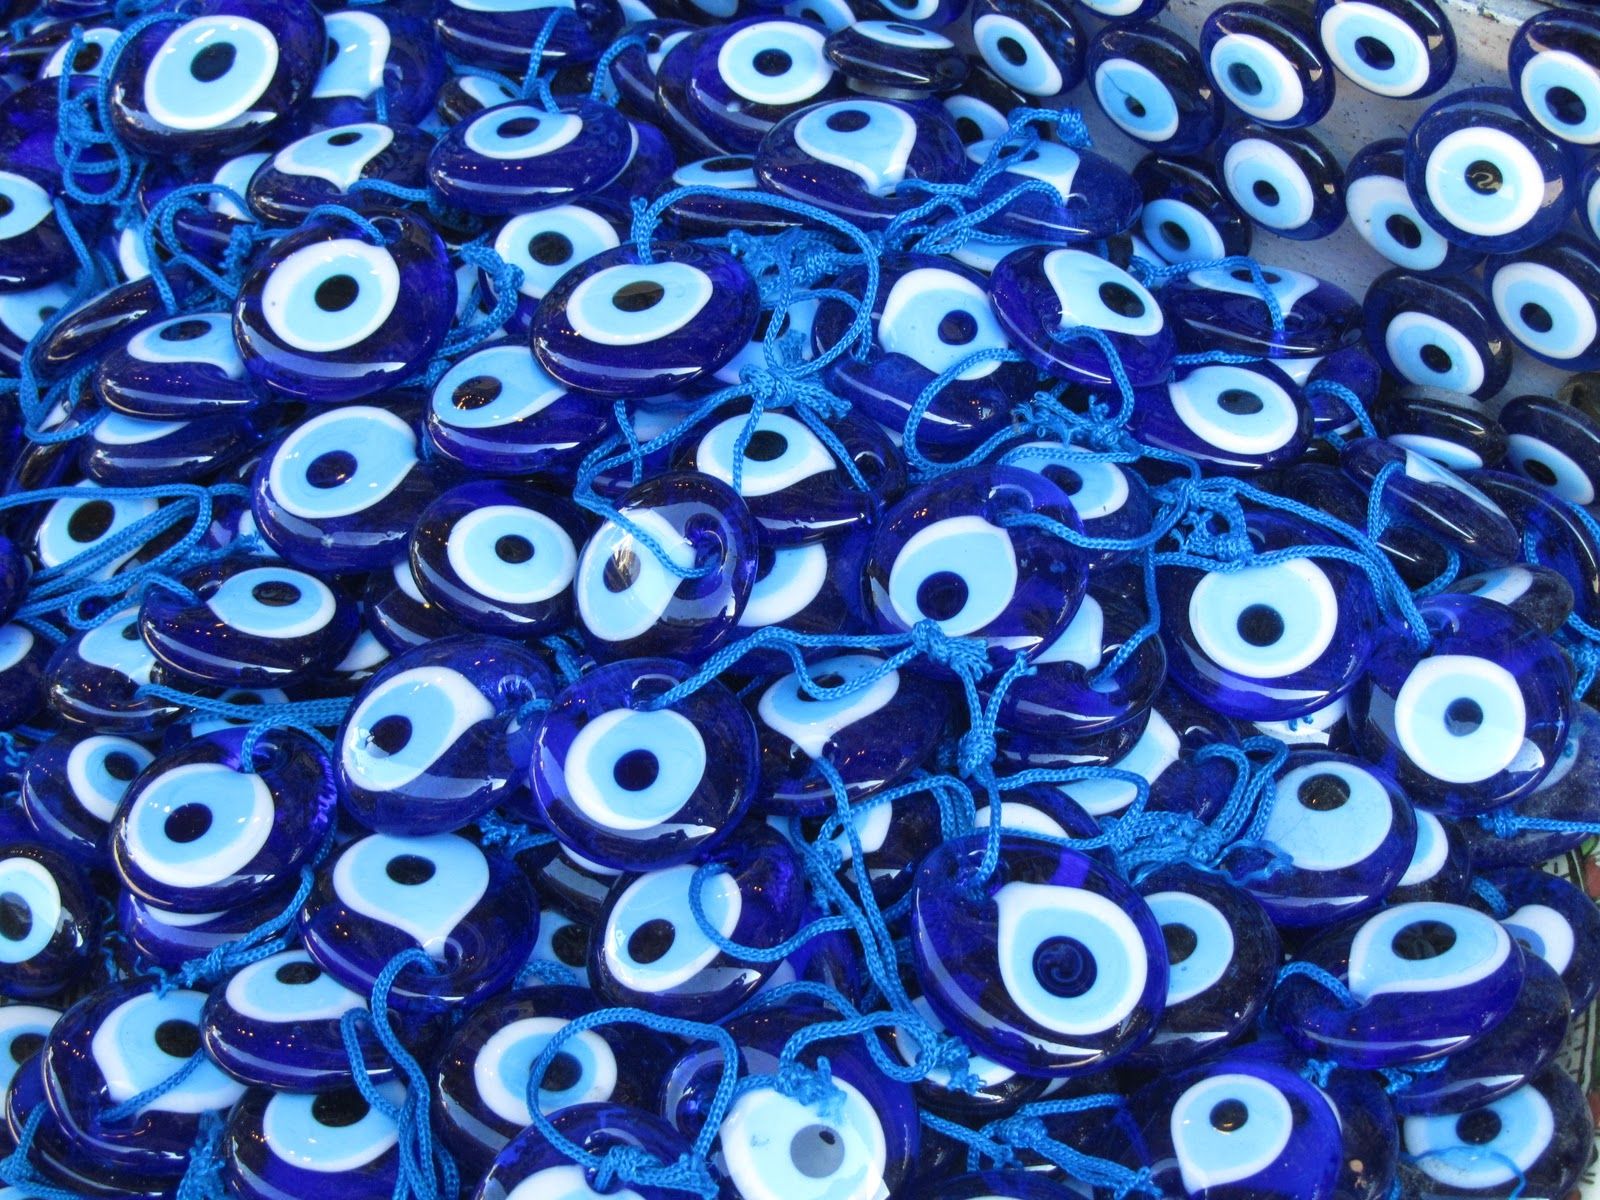  49 Evil Eyes Wallpaper WallpaperSafari com